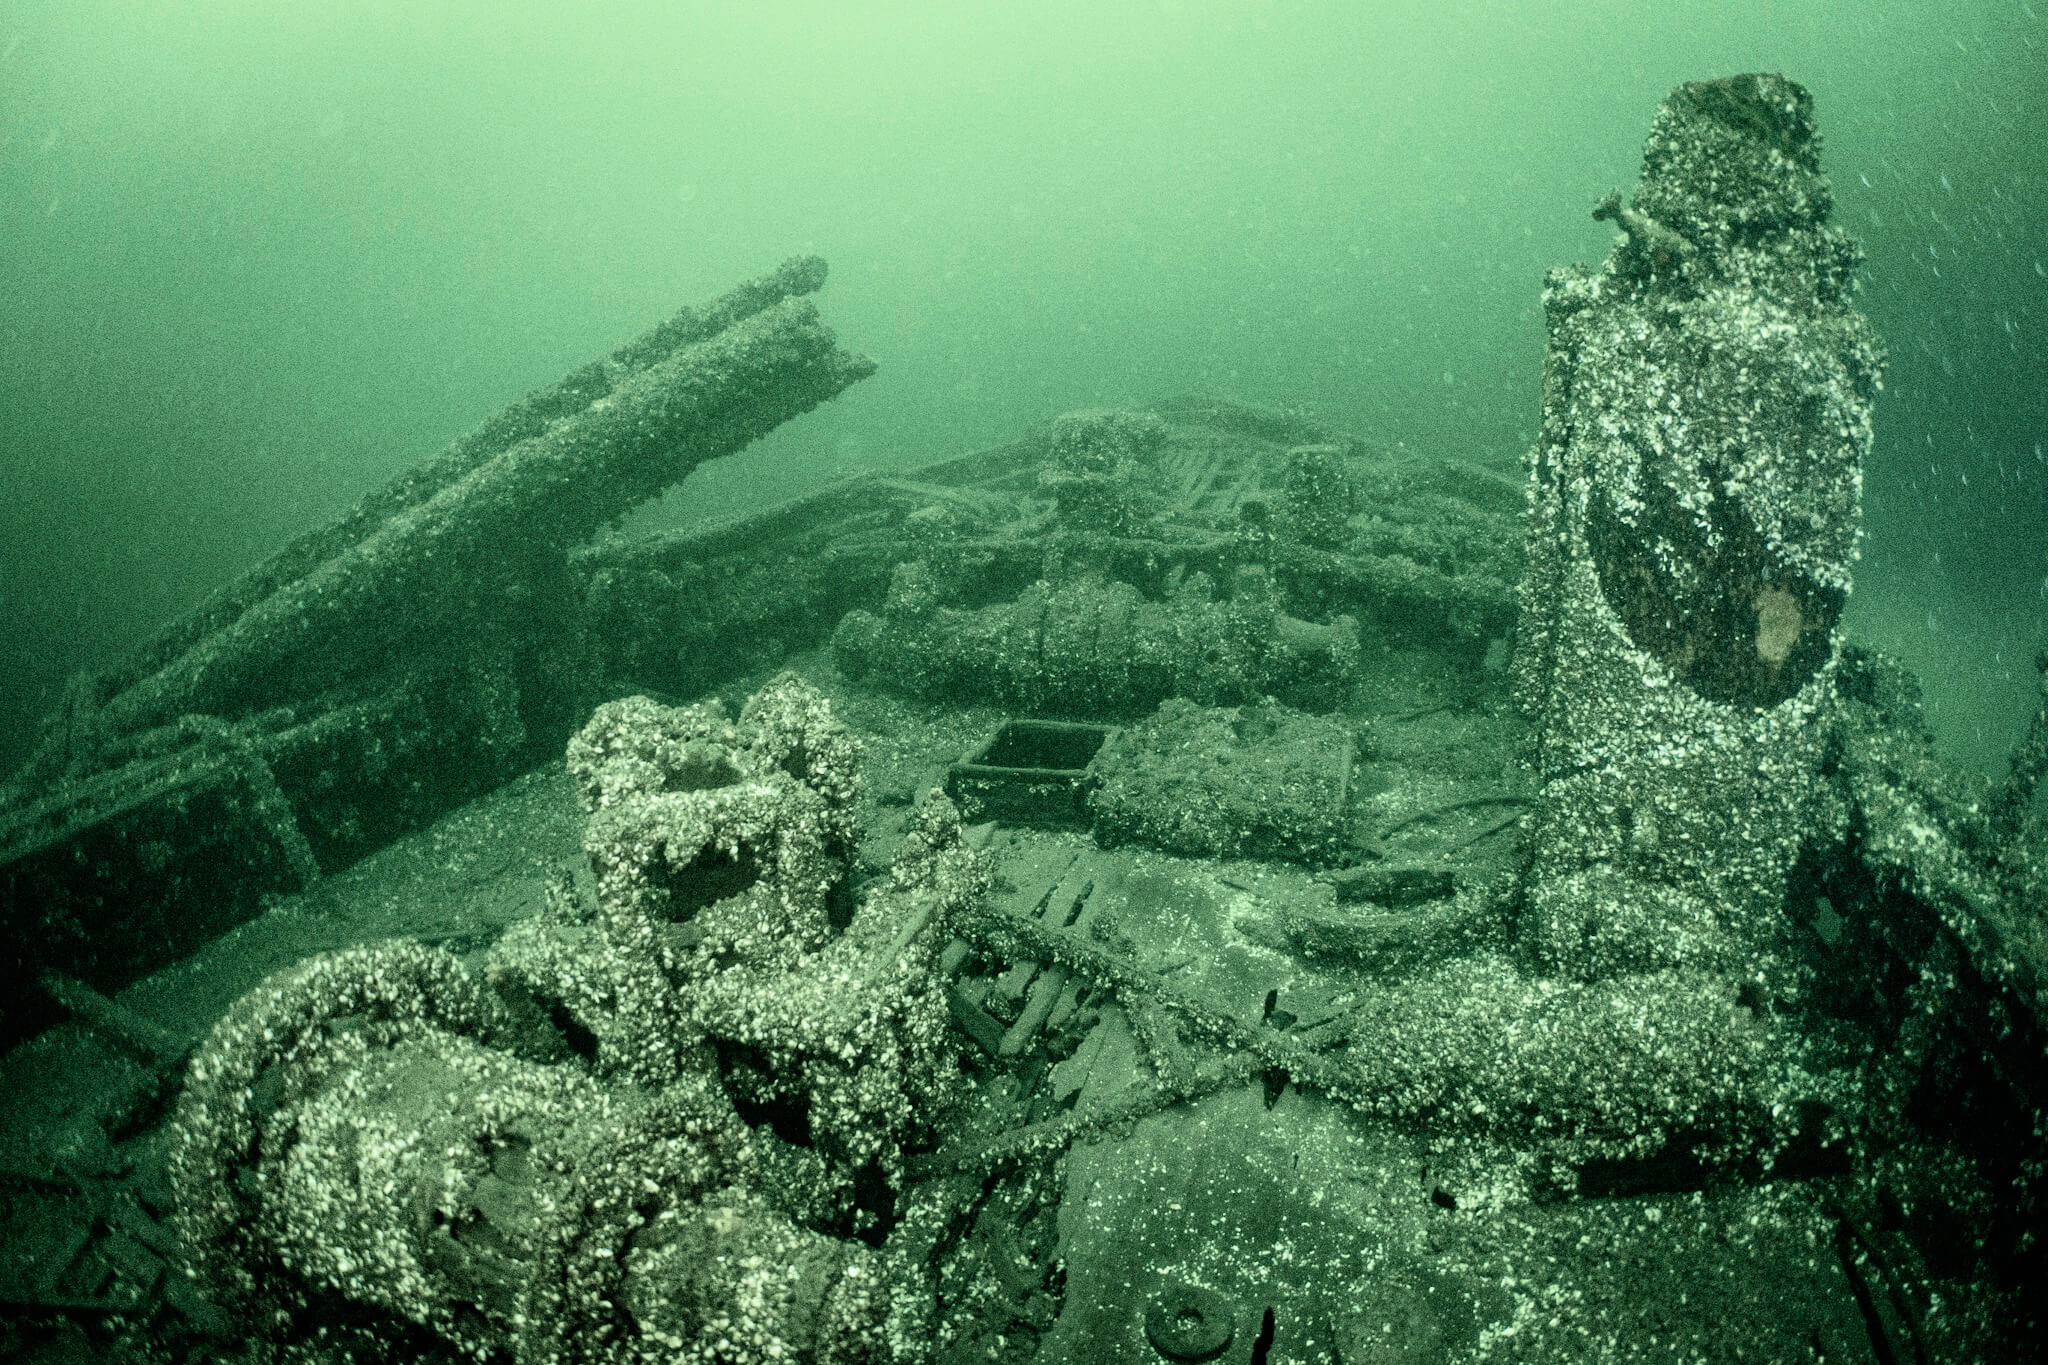 The City of Sheboygan shipwreck in Lake Ontario near Picton